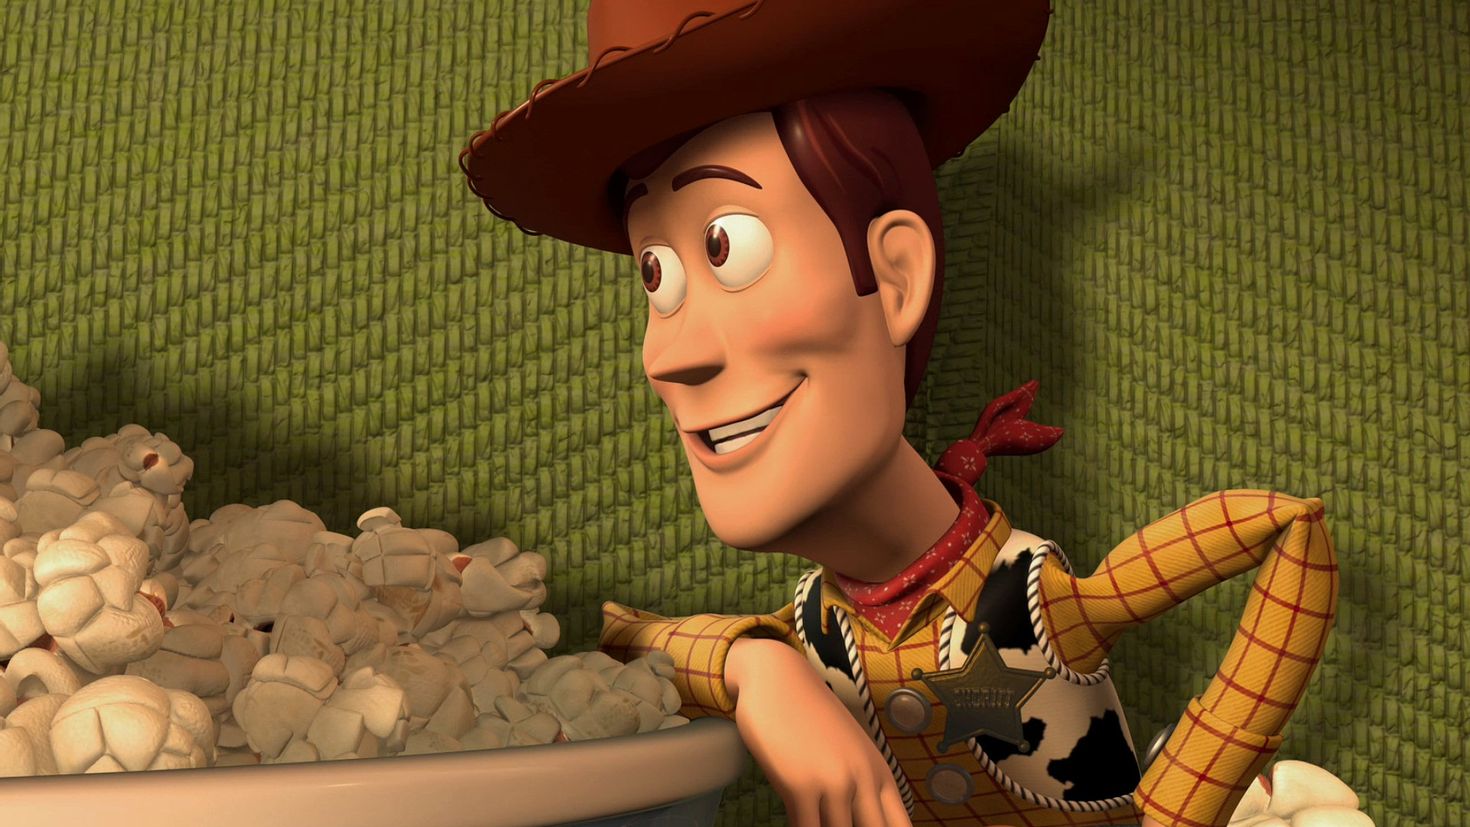 Woody toy story. Шериф Вуди. Вуди герой мультика истории игрушек. Ковбой Вуди. Веди из истории игрушек.